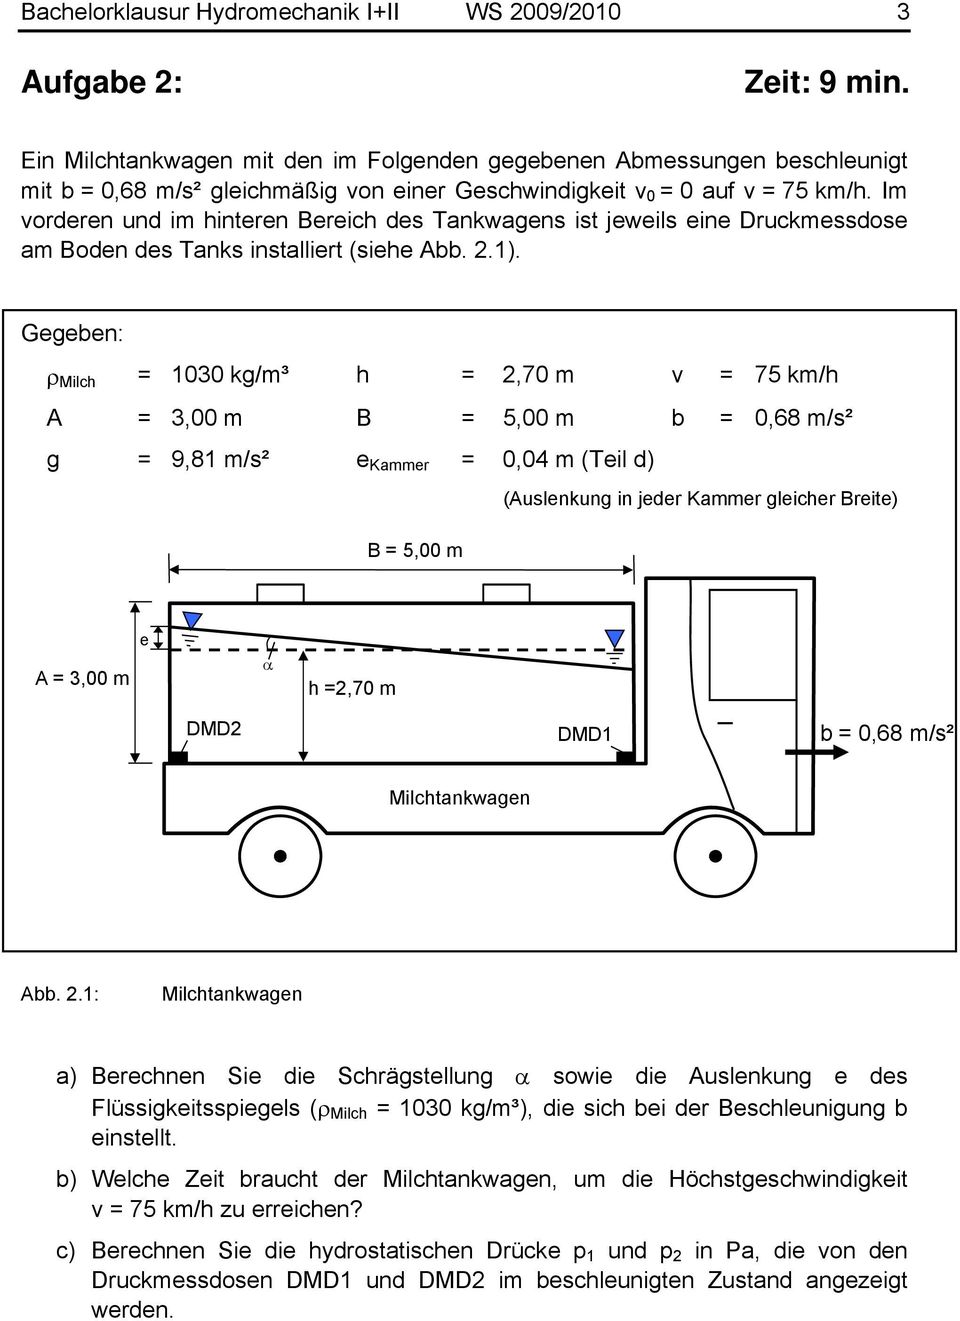 Im vorderen und im hinteren Bereich des Tankwagens ist jeweils eine Druckmessdose am Boden des Tanks installiert (siehe Abb..1).